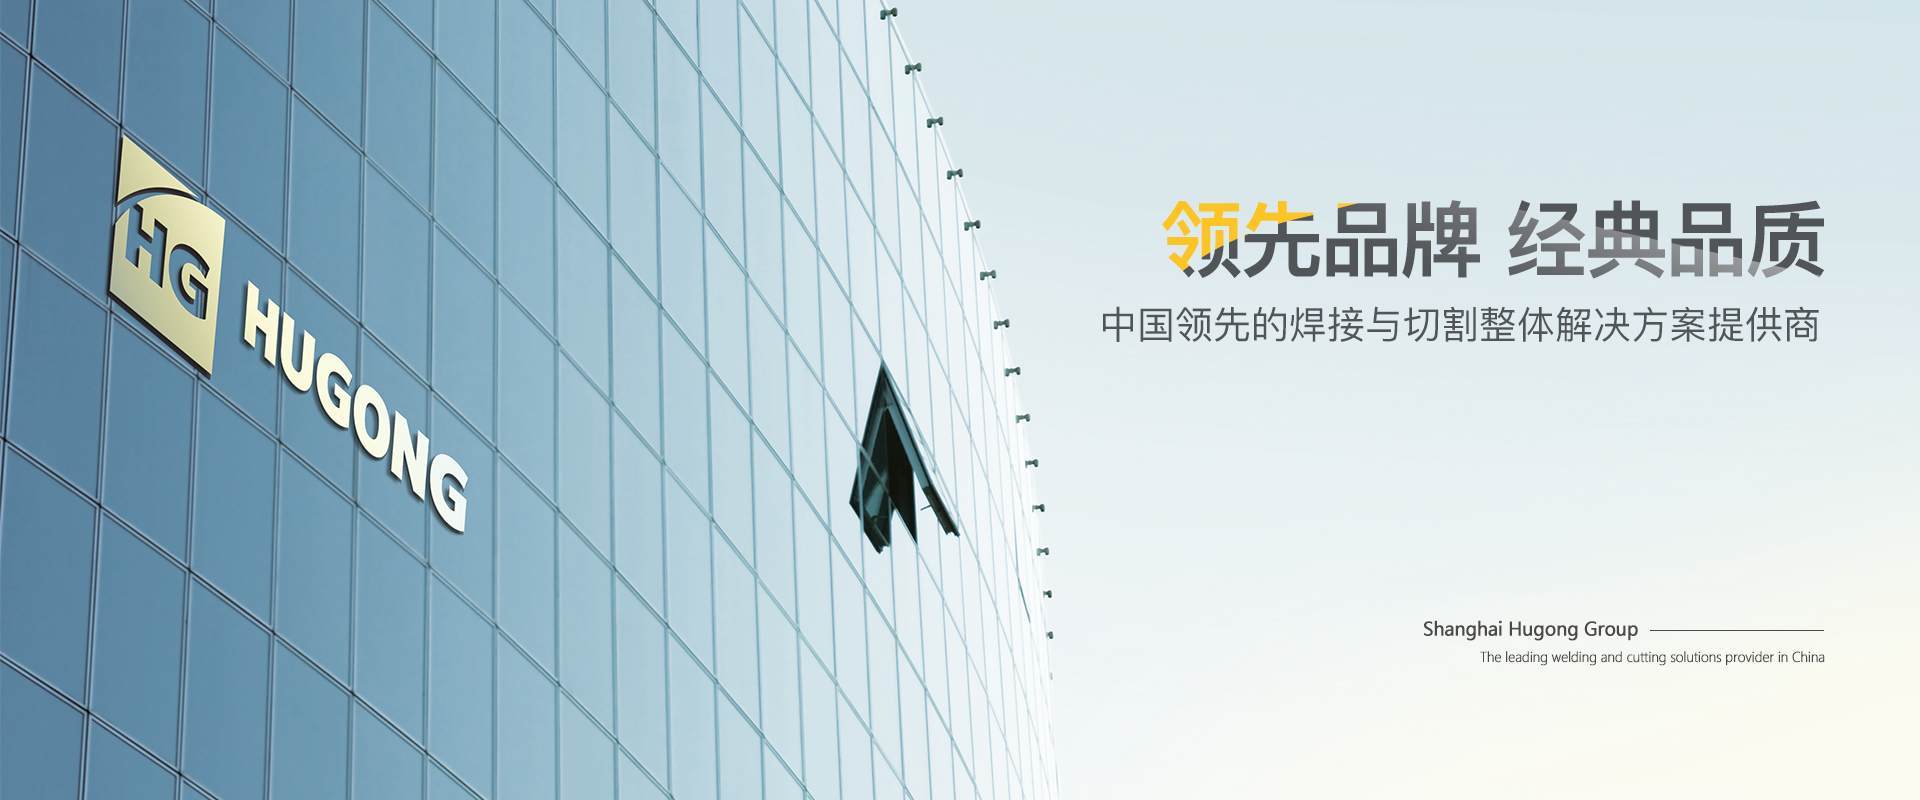 太阳成tyc7111cc-中国领先的焊接与切割整体解决方案提供商